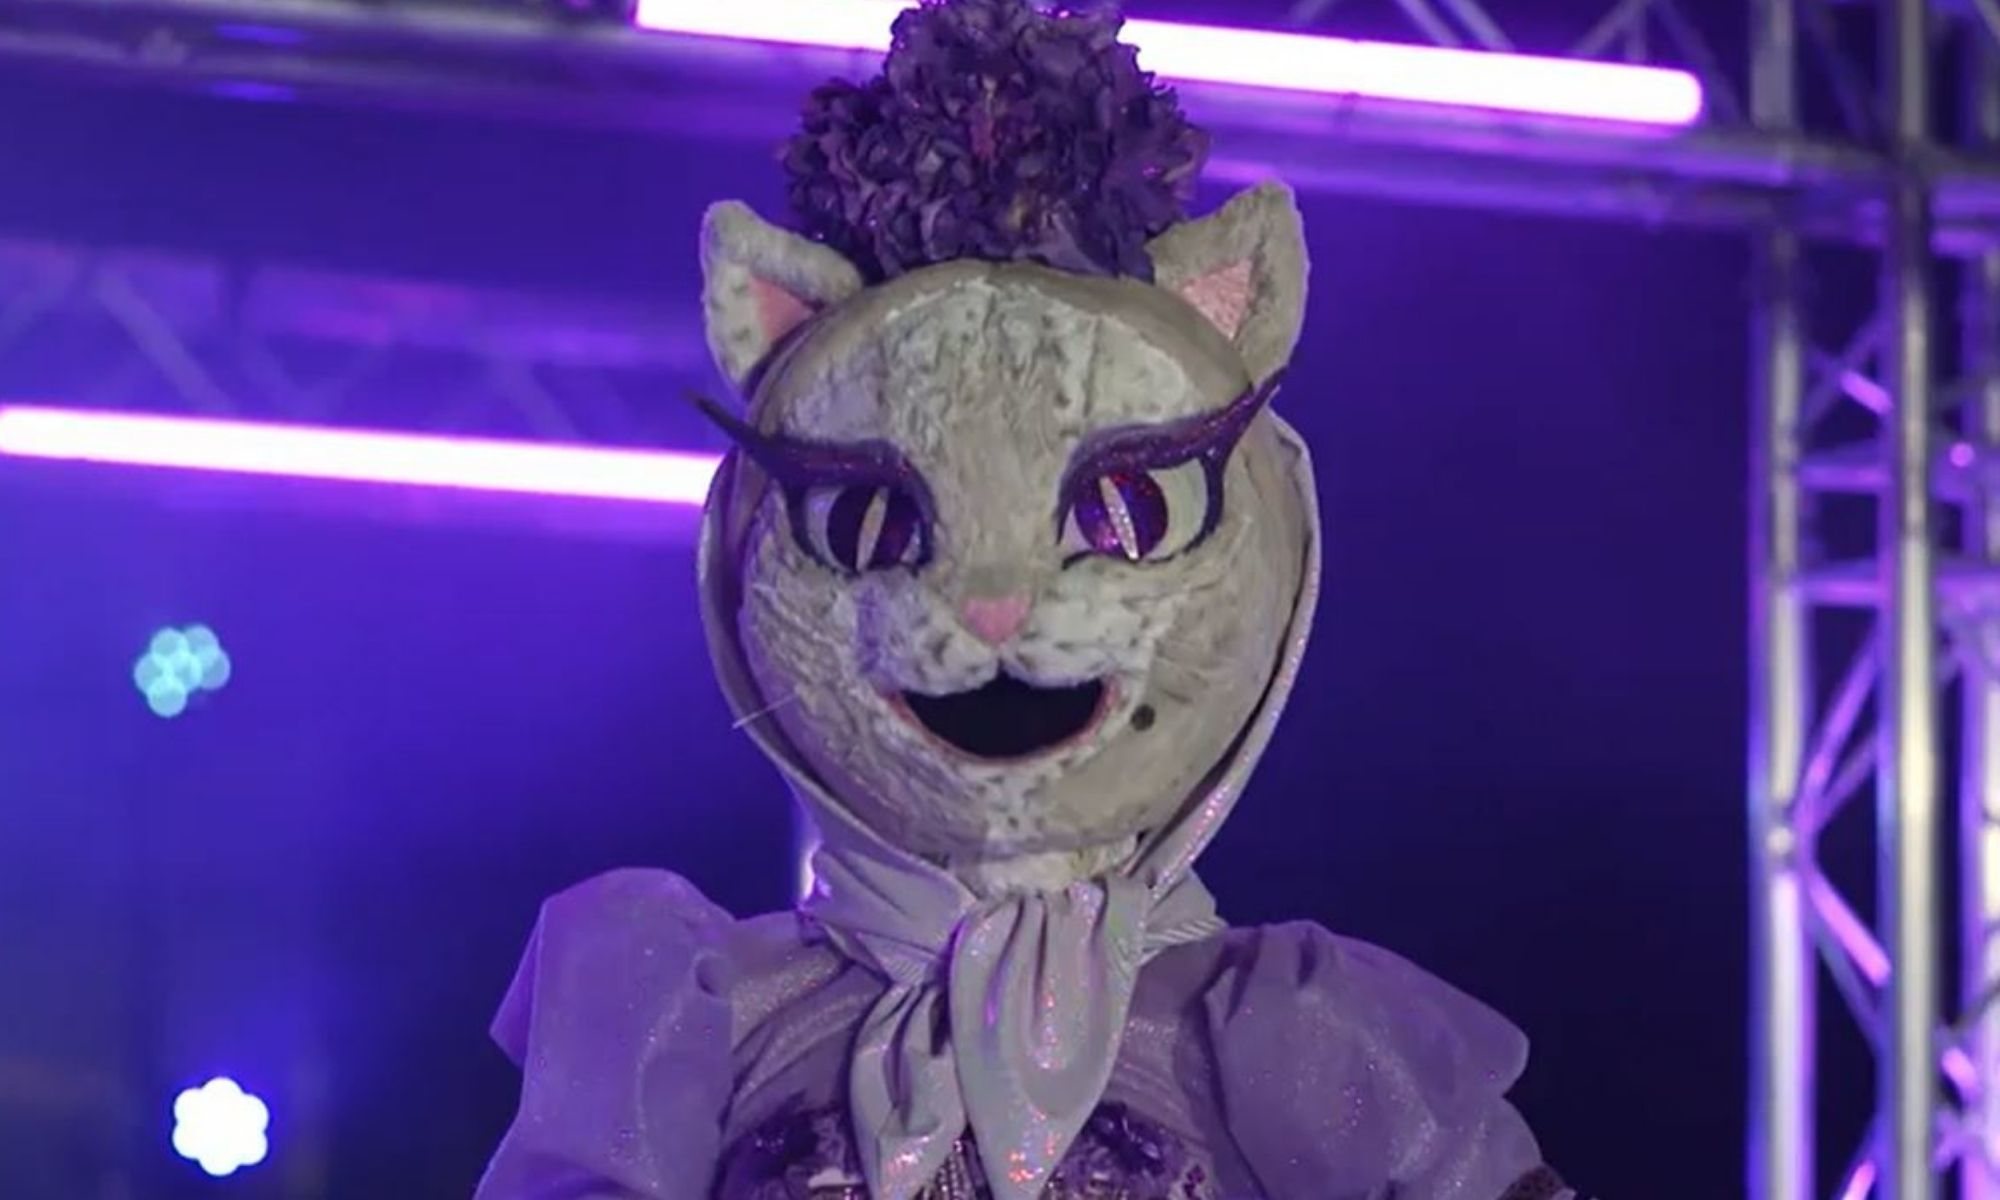 Gatita, máscara de 'Mask Singer 2'